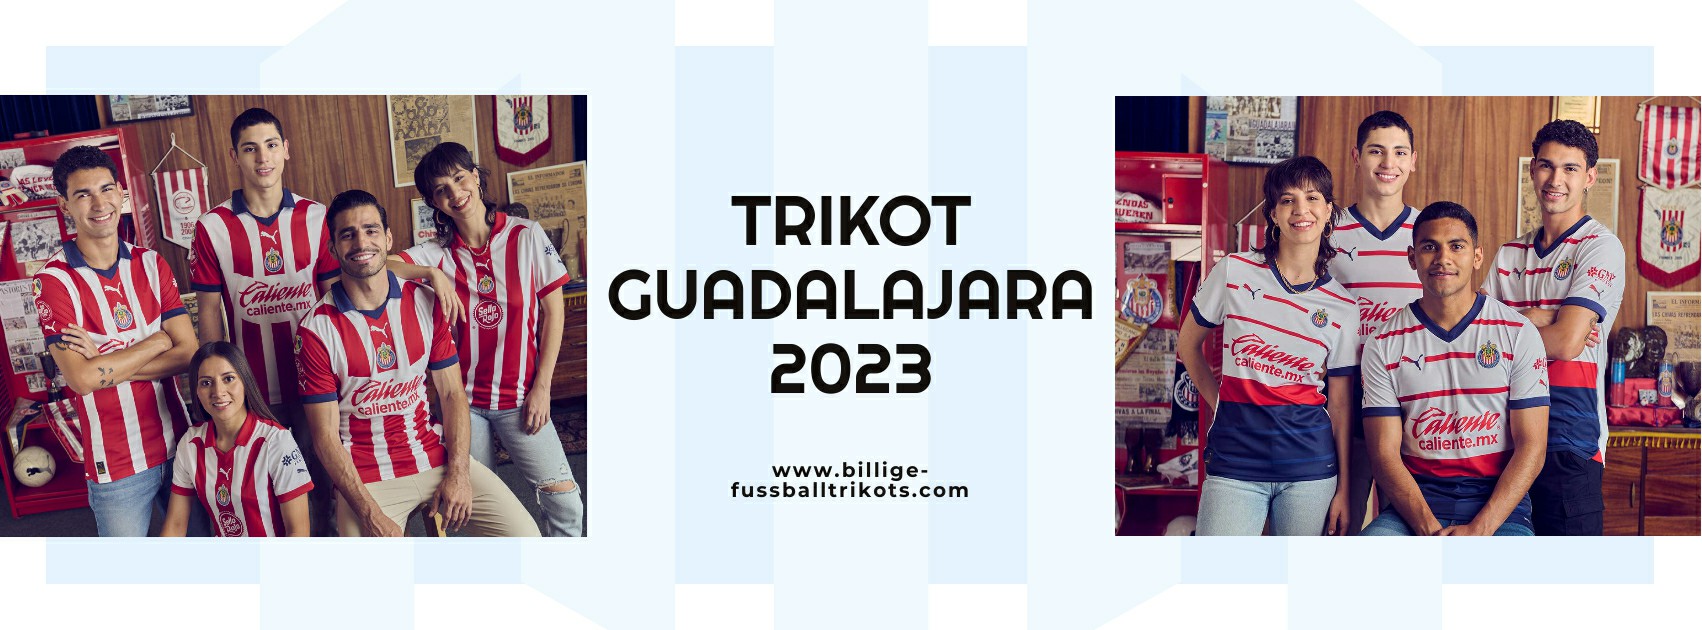 Guadalajara Trikot 2023-2024